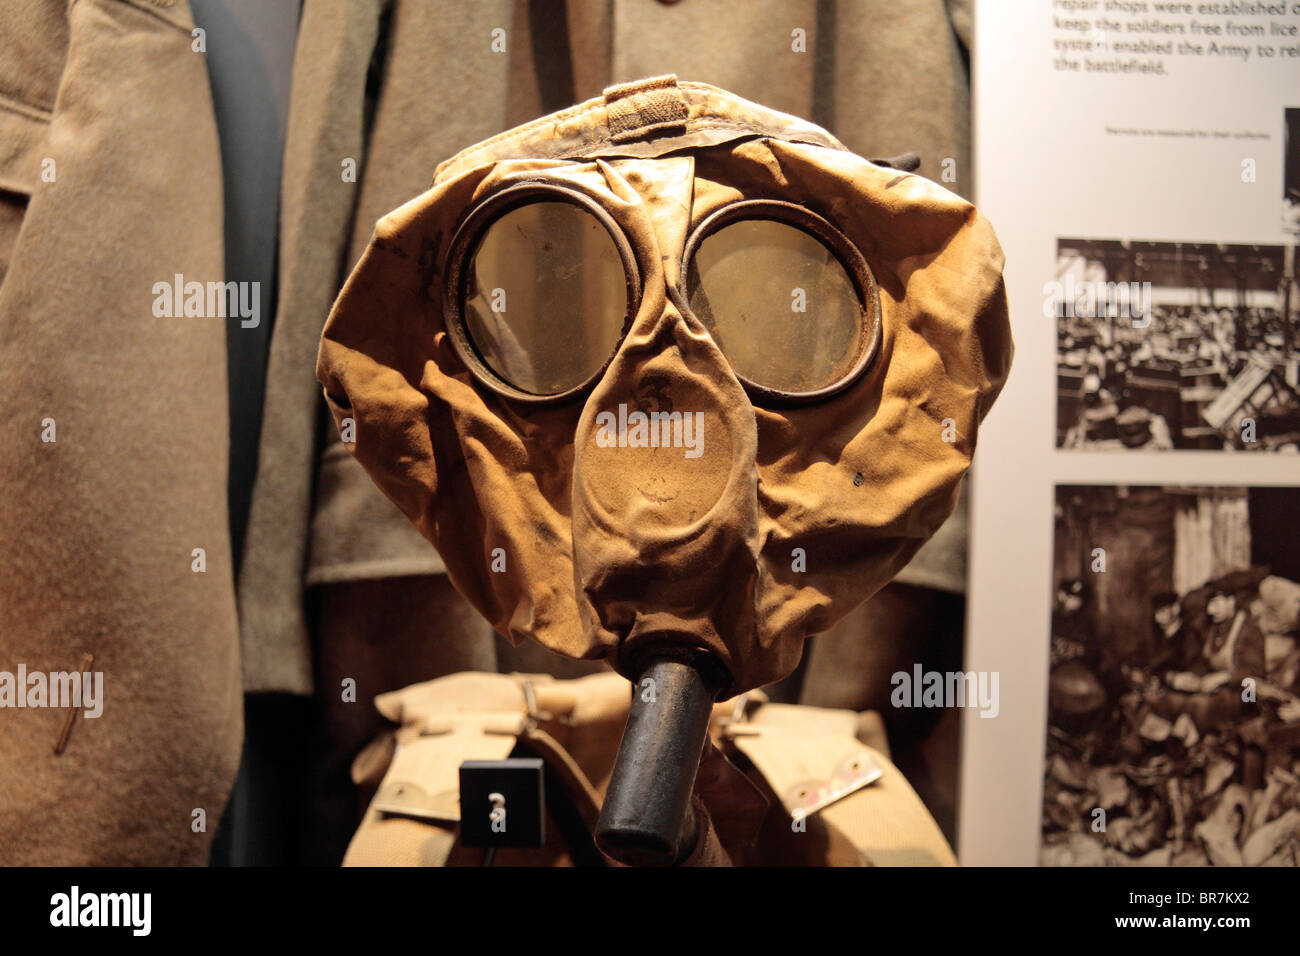 Un pequeño cuadro británico respirador en exhibición en el Museo Imperial de la guerra, Londres, Reino Unido. Foto de stock